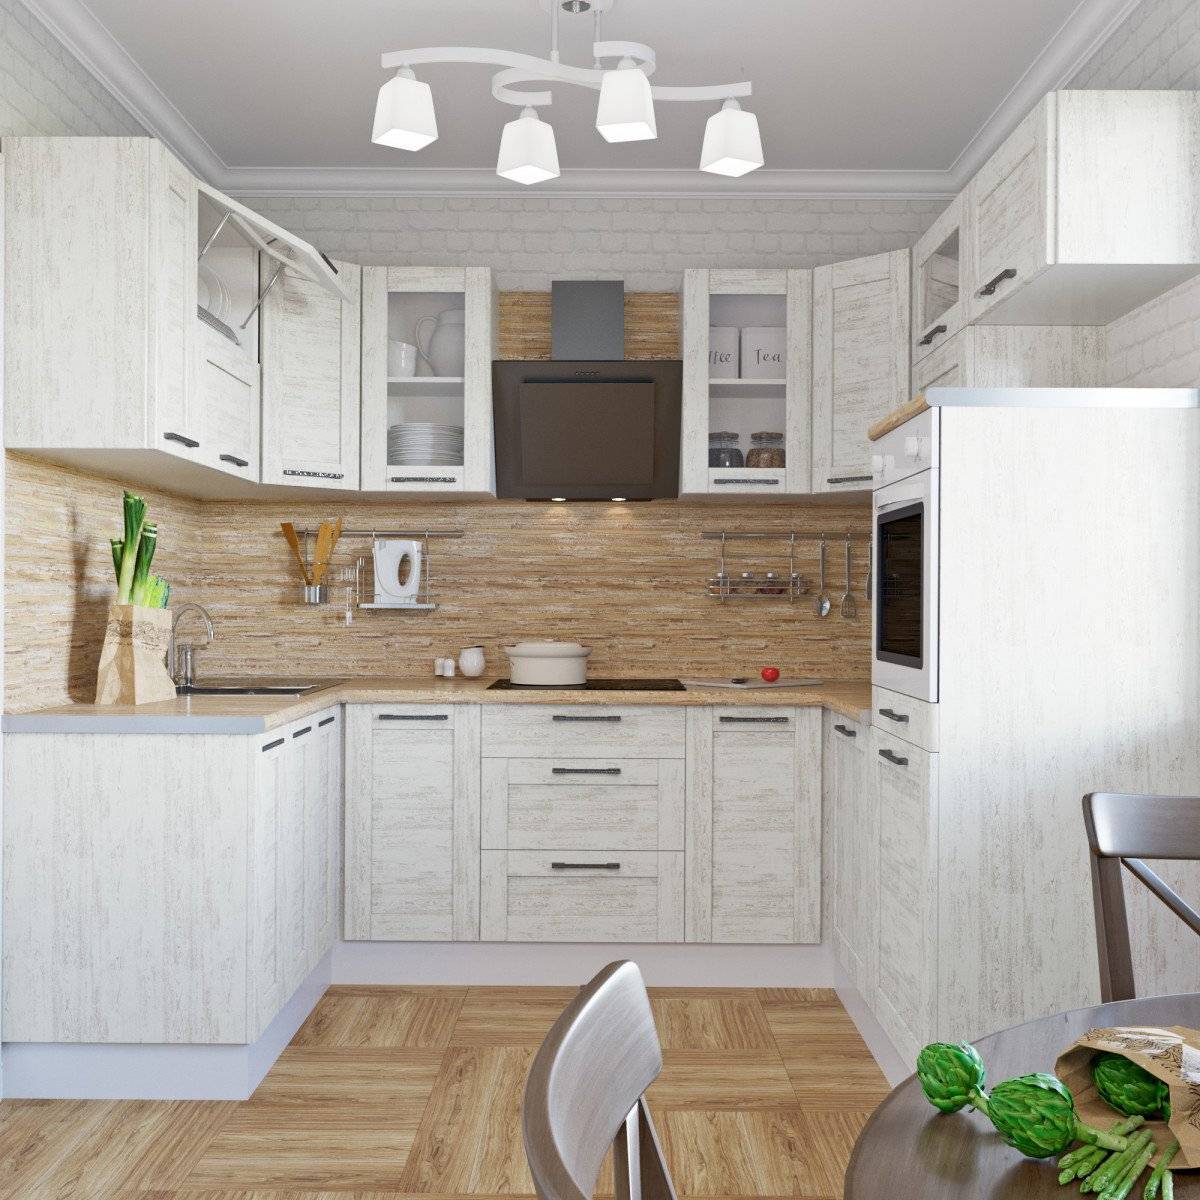 Каталог кухонь леруа мерлен: 47 реальных фото в квартирах и салонах.